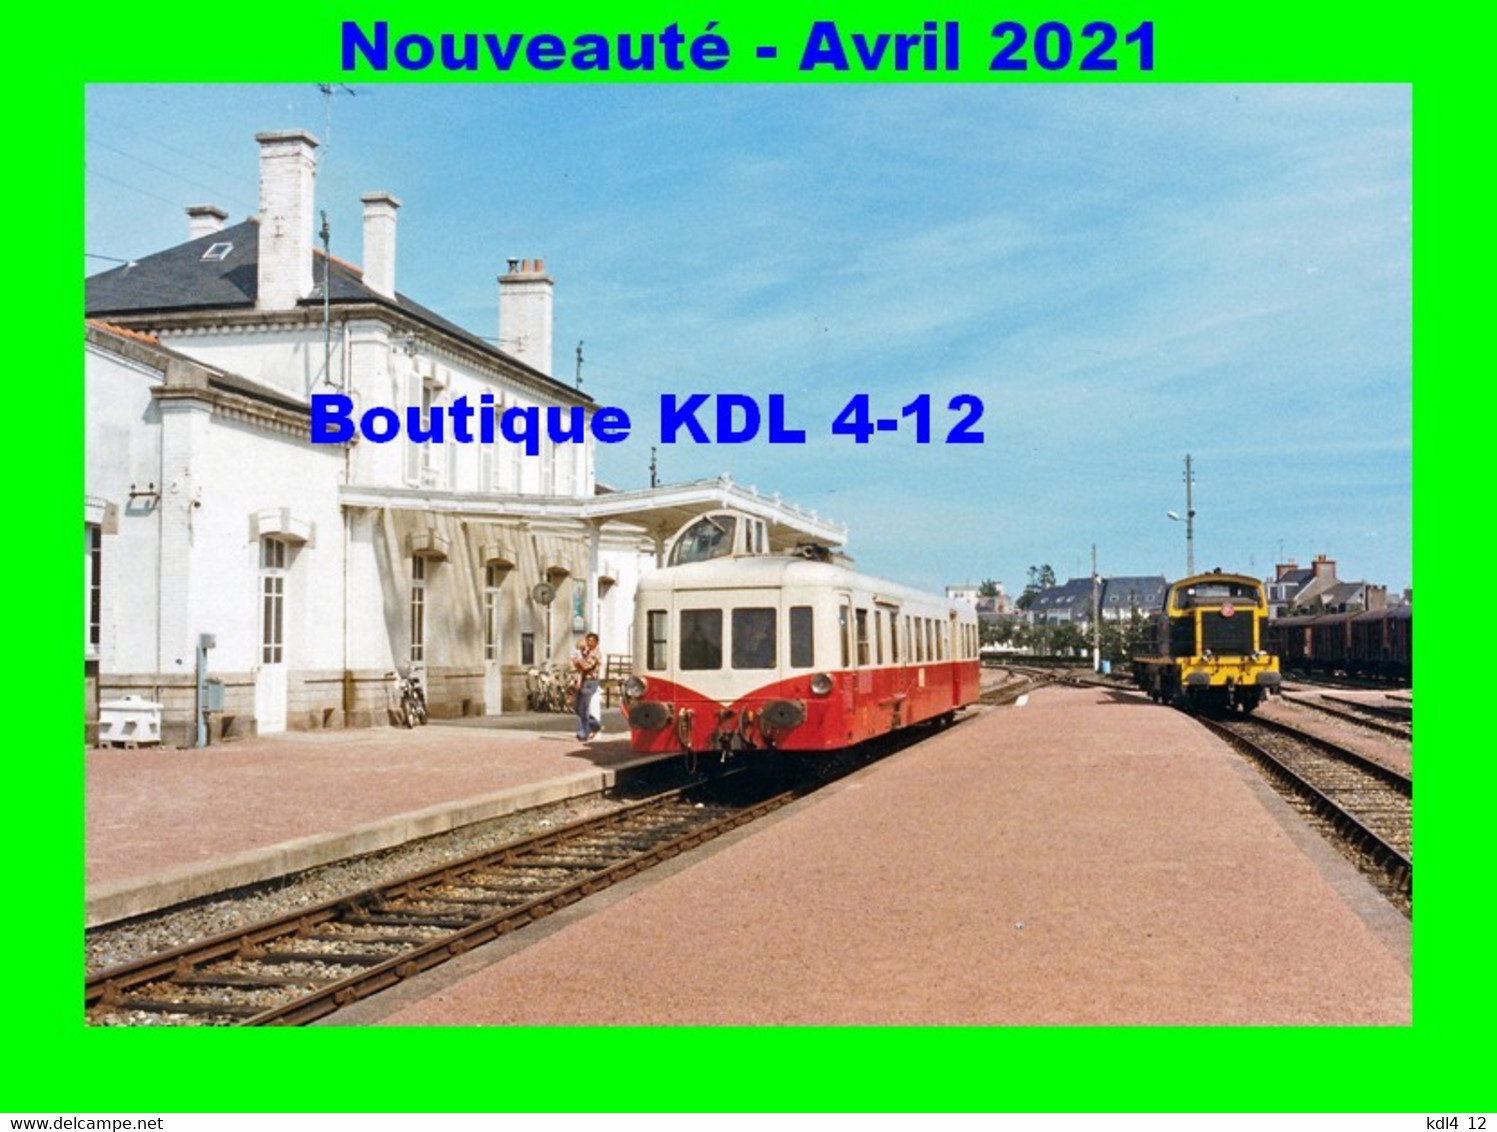 AL 668 - Autorail Picasso Et Loco BB 63000 En Gare - PAIMPOL - Côtes D'Armor - RB - Stations - Met Treinen